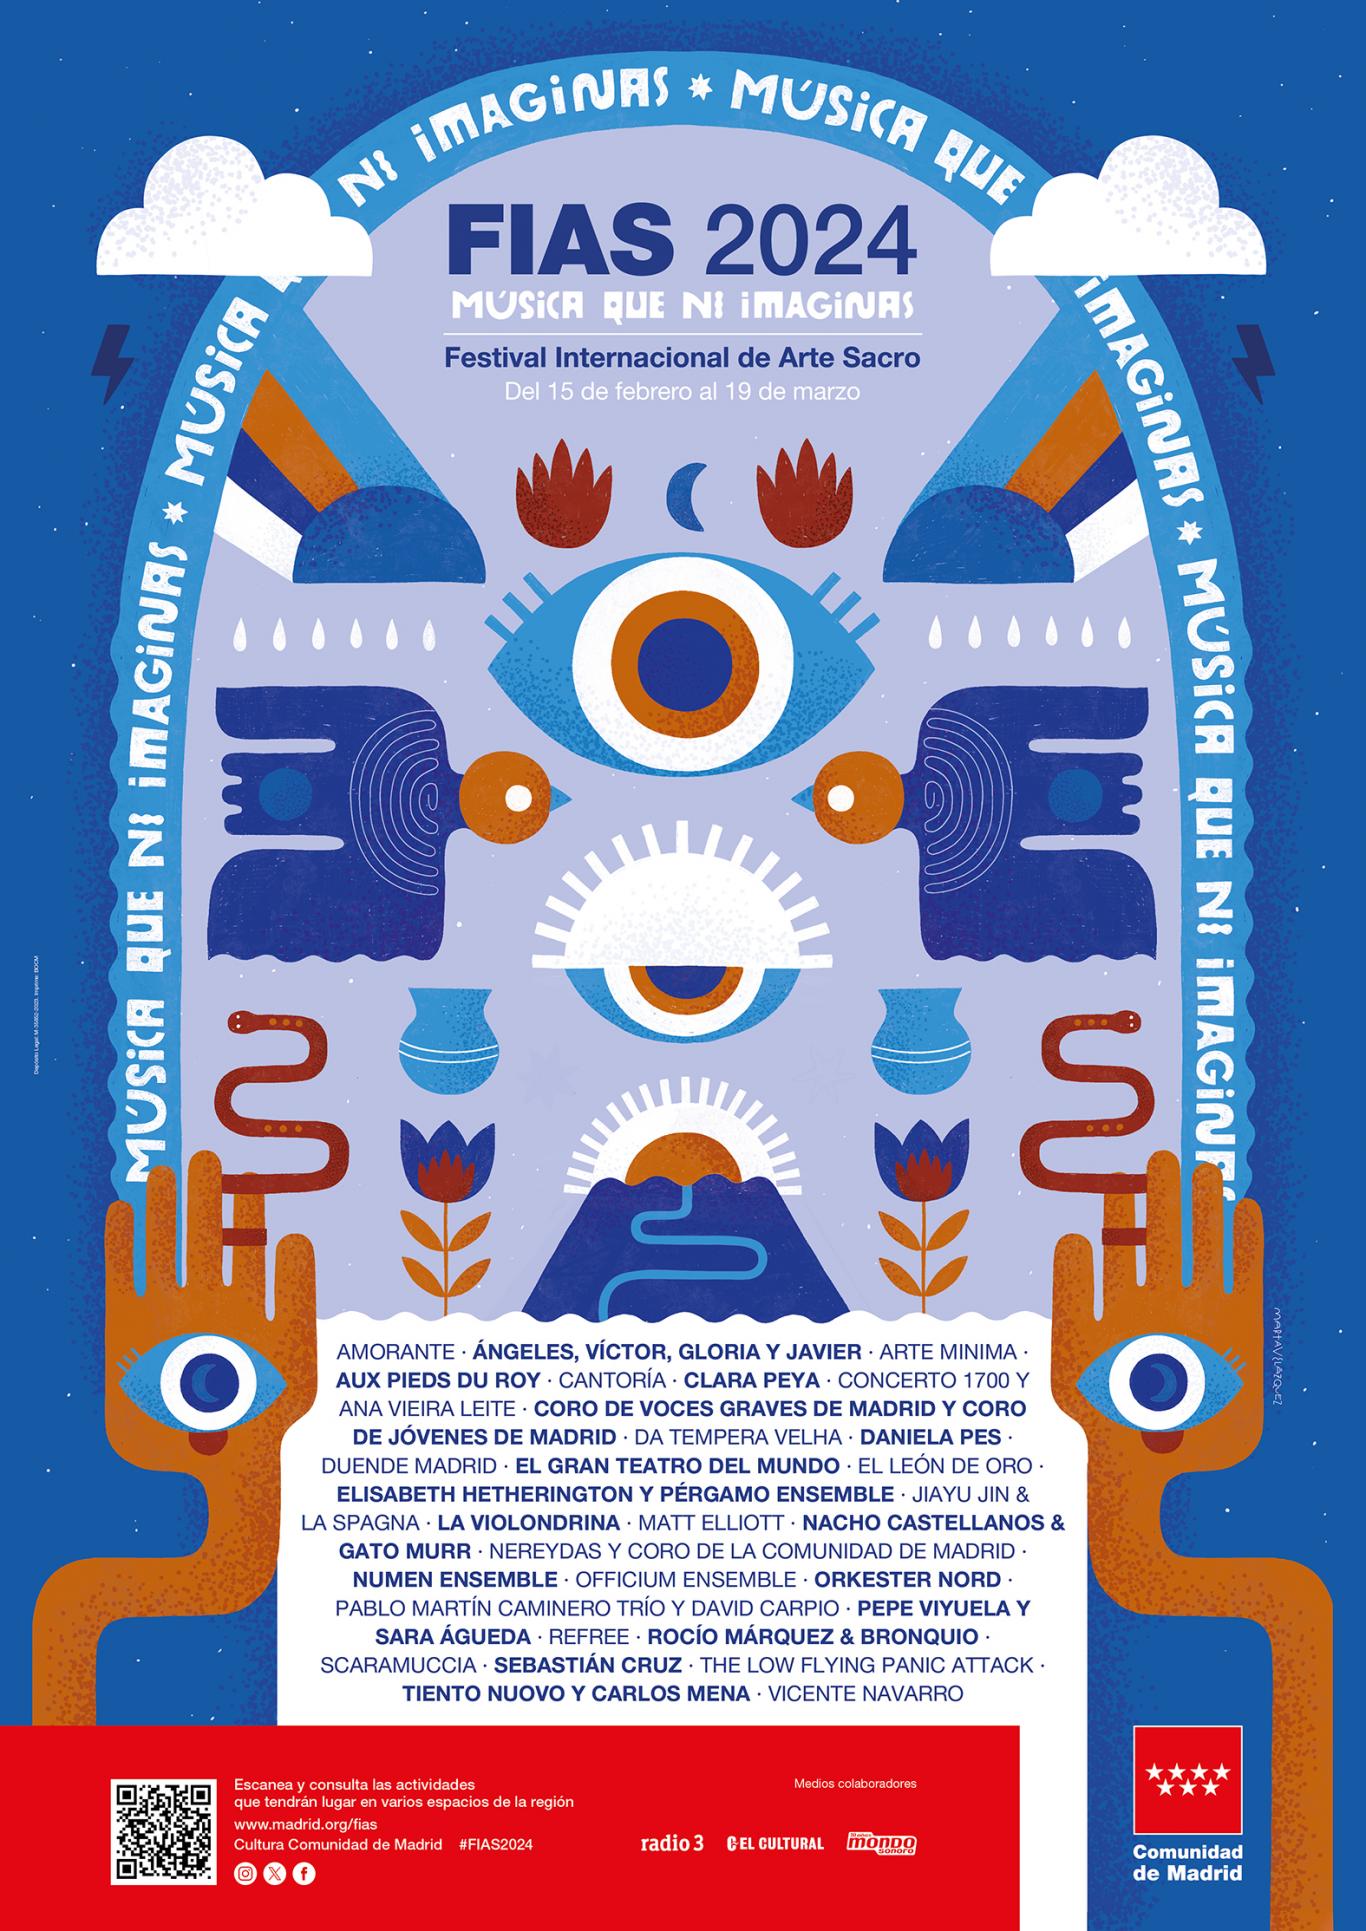 Cartel con dibujos de ojos, manos y notas musicales con los nombres de los artistas y grupos musicales que participan en este festival